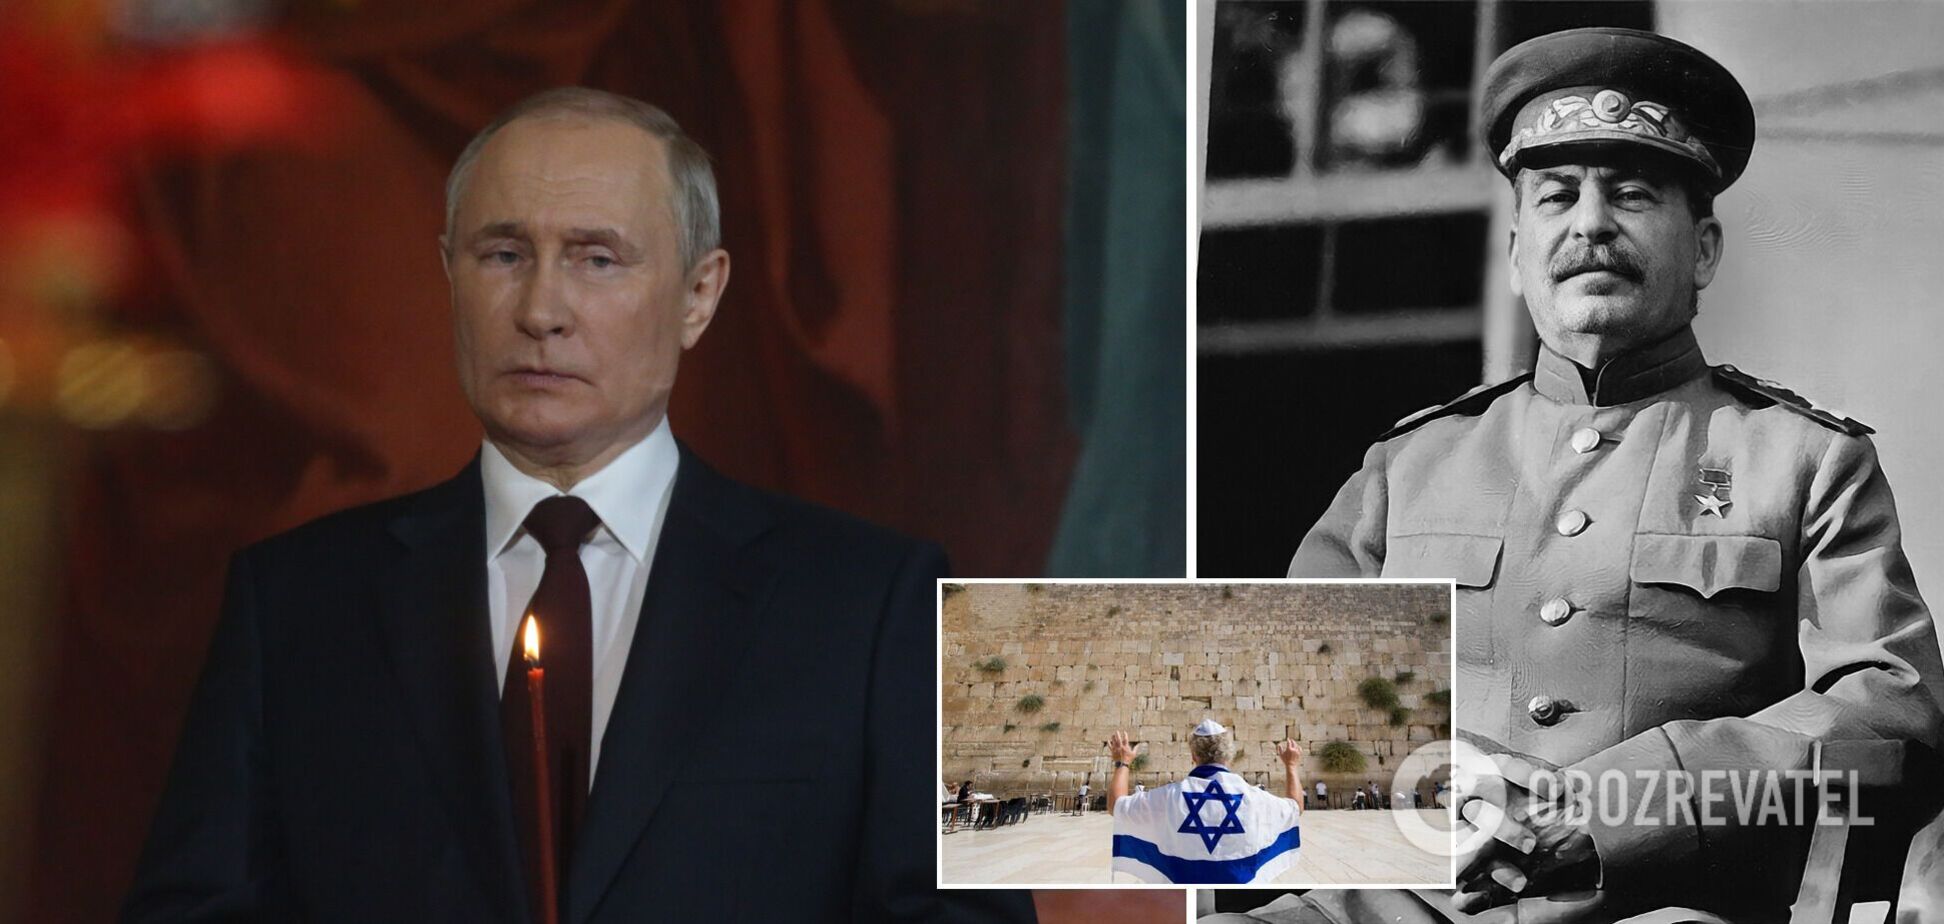 Путіну підготуватися. Як діє страшне єврейське прокляття 'Пульса де-нура', яке могло вбити прем'єрів Ізраїлю, Троцького та Сталіна